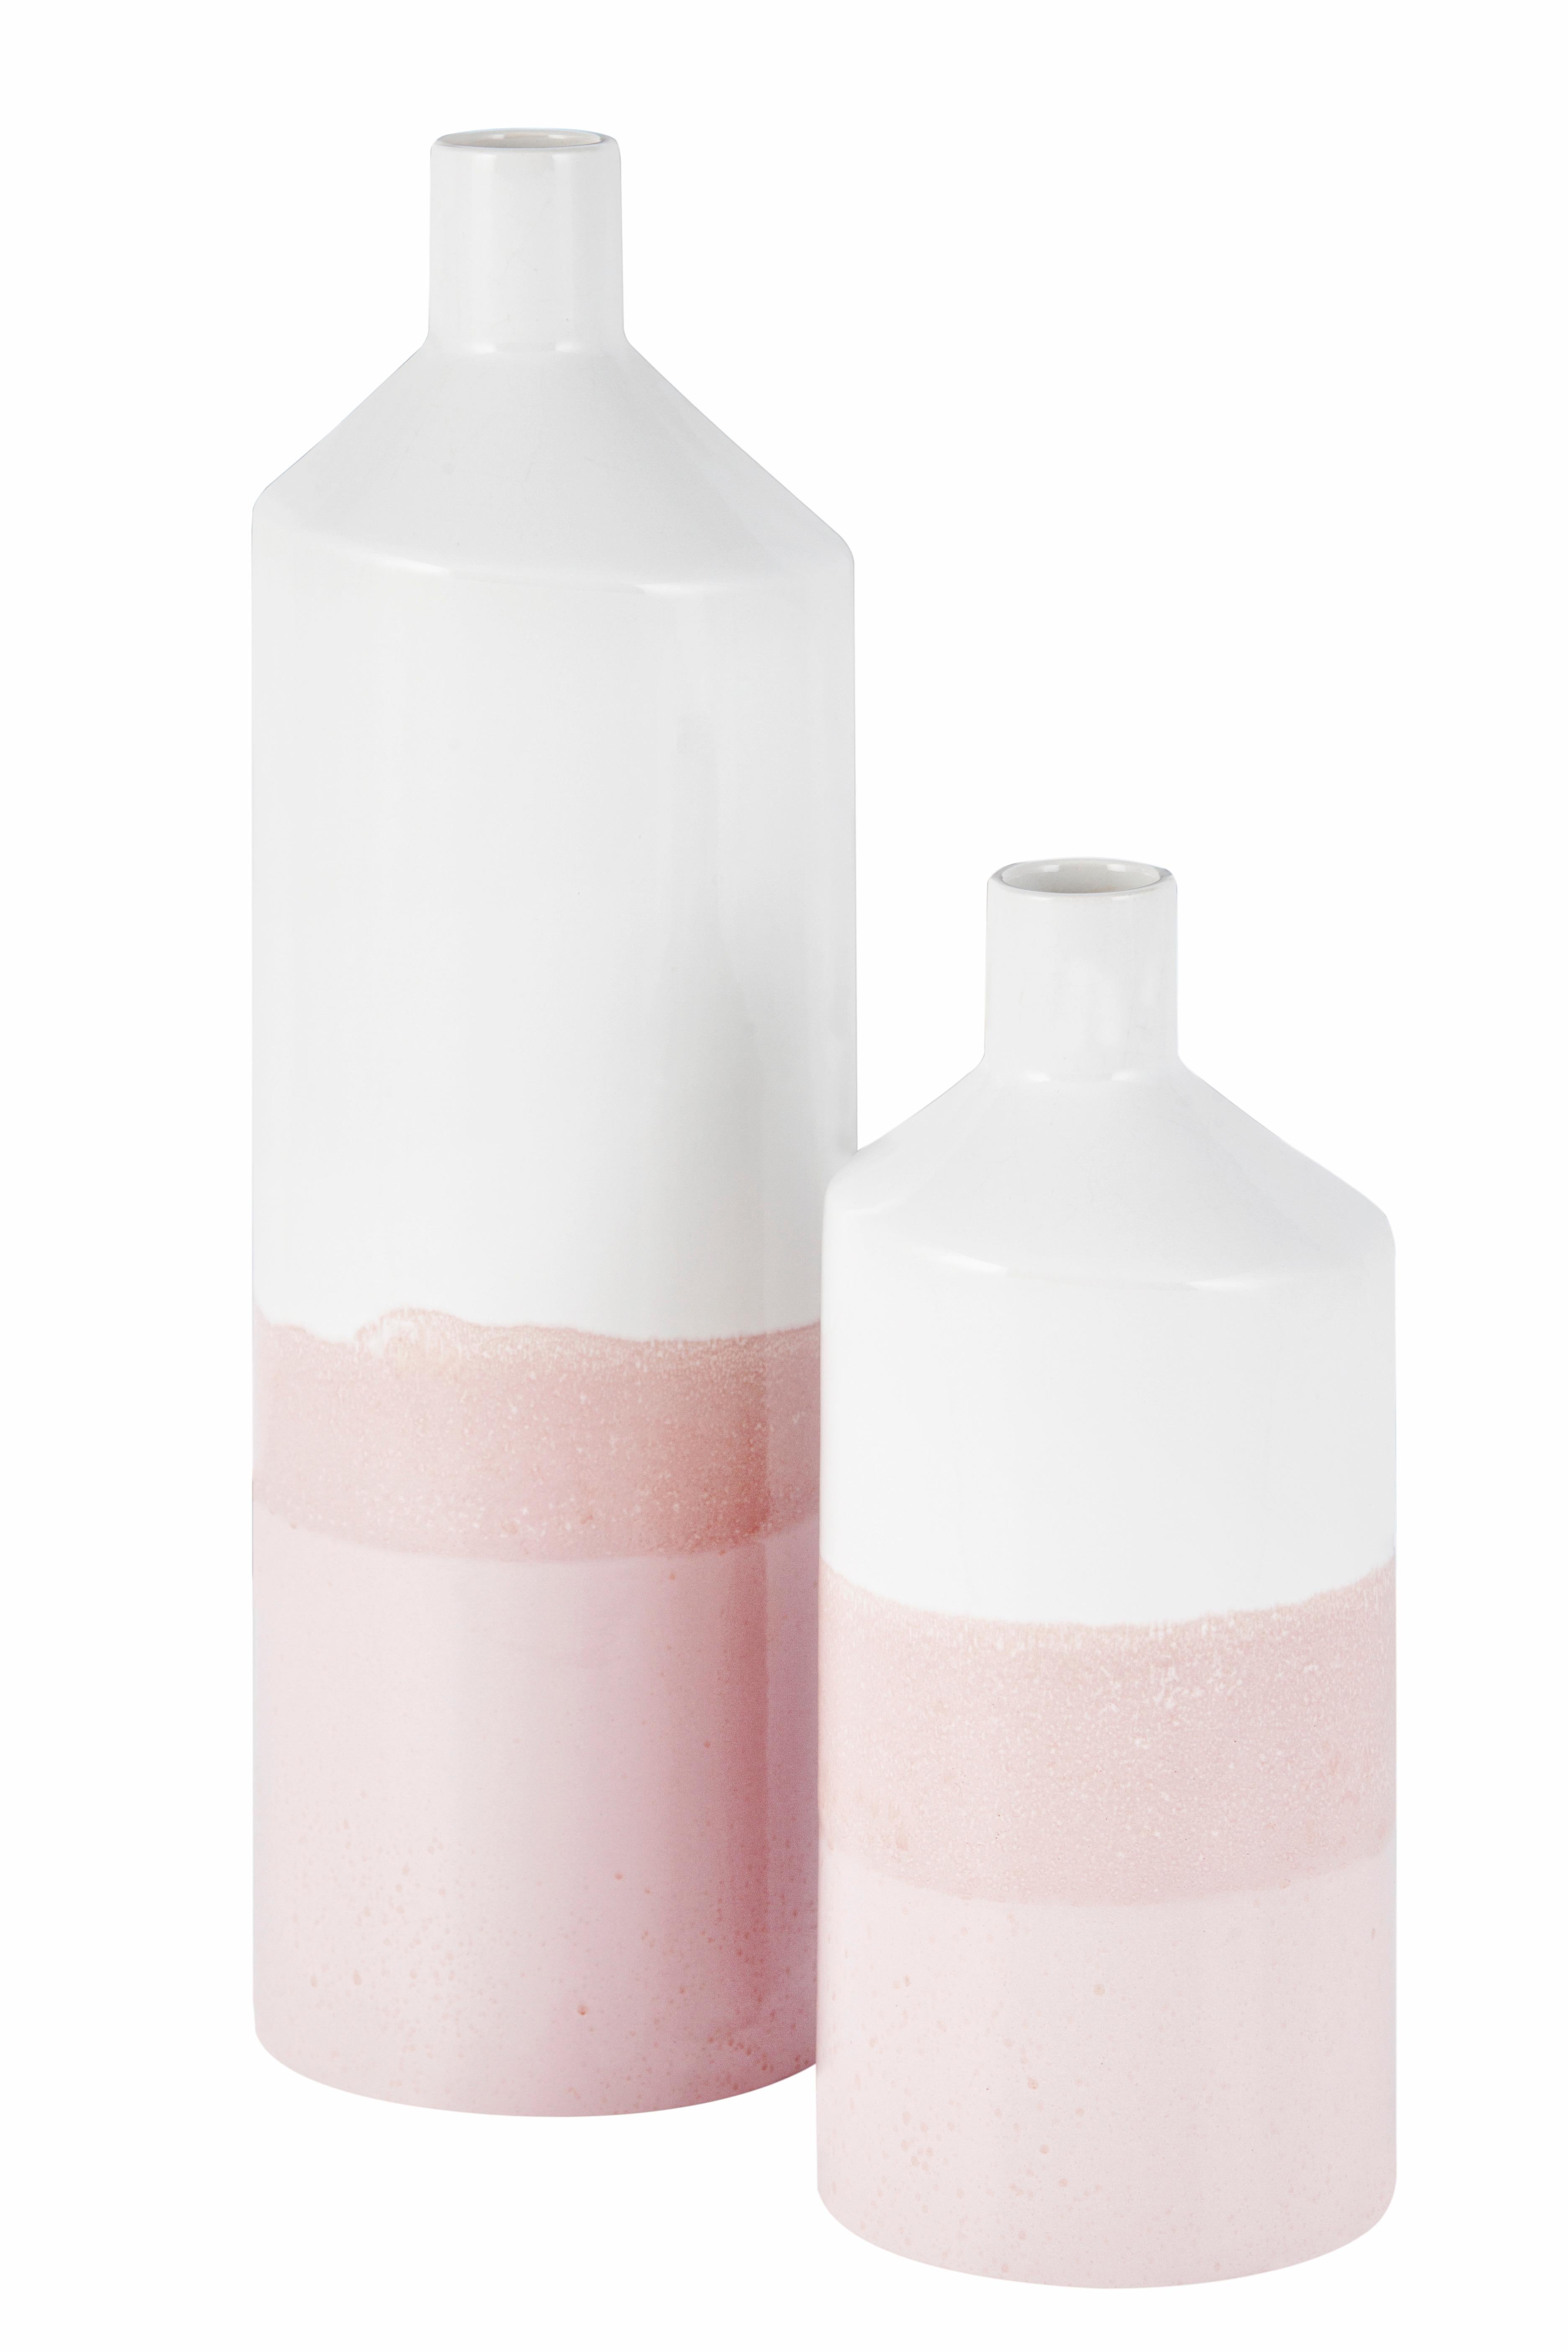 pink ceramic vases